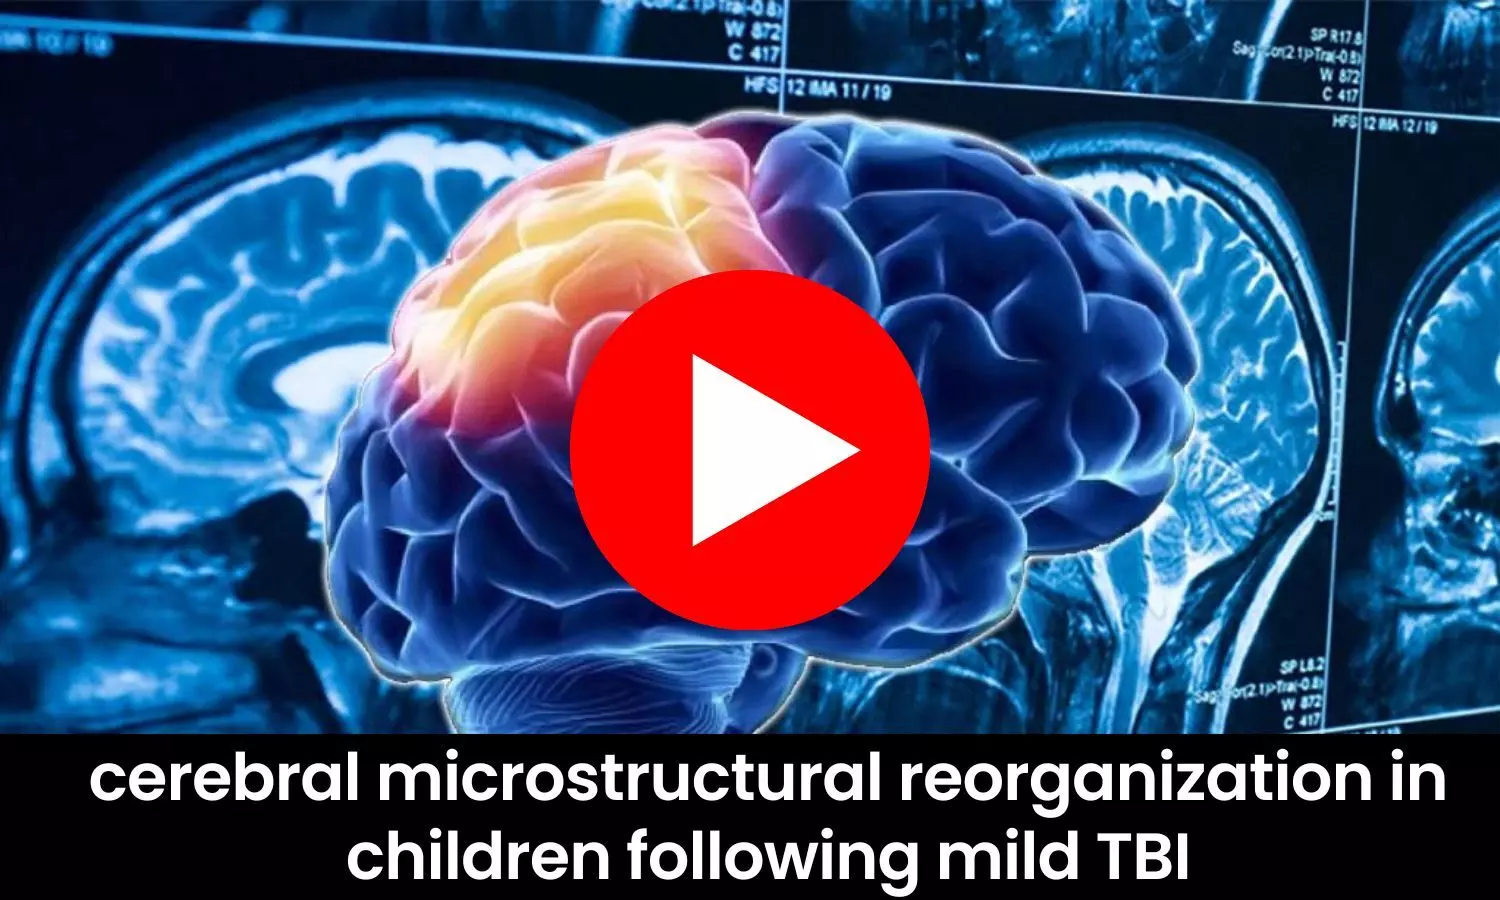 Cerebral microstructural reorganization in children following mild TBI